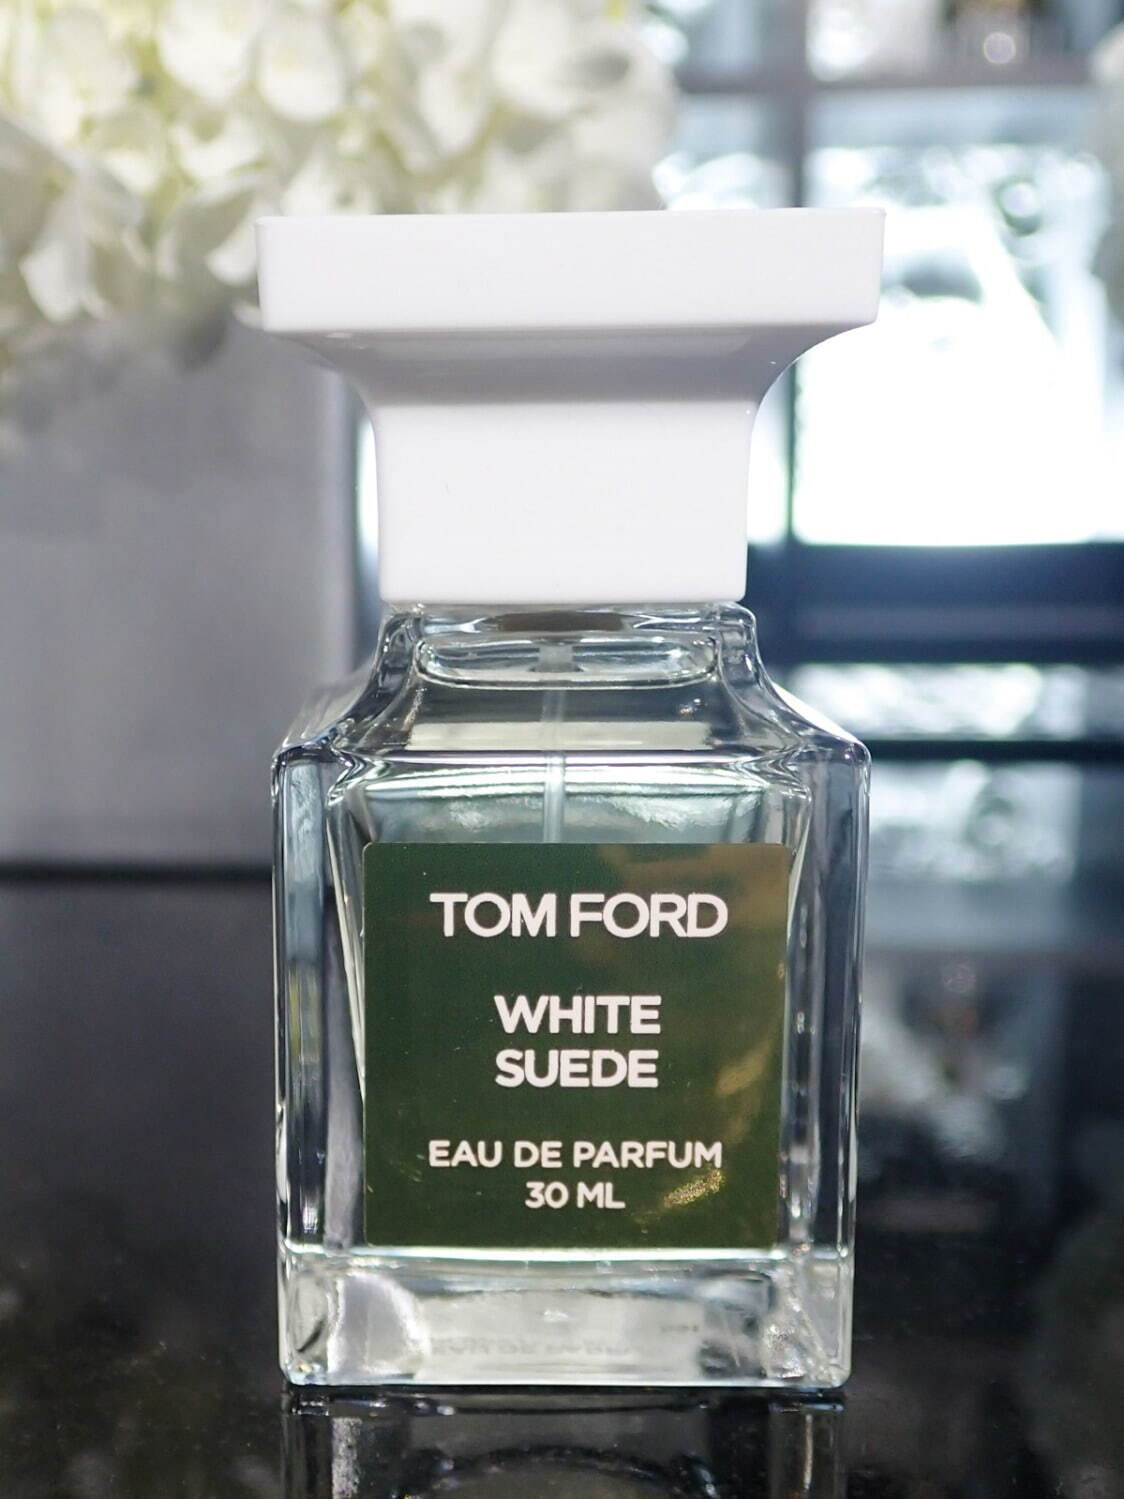 トム フォード ビューティ22年冬コスメ、人気香水「ホワイト